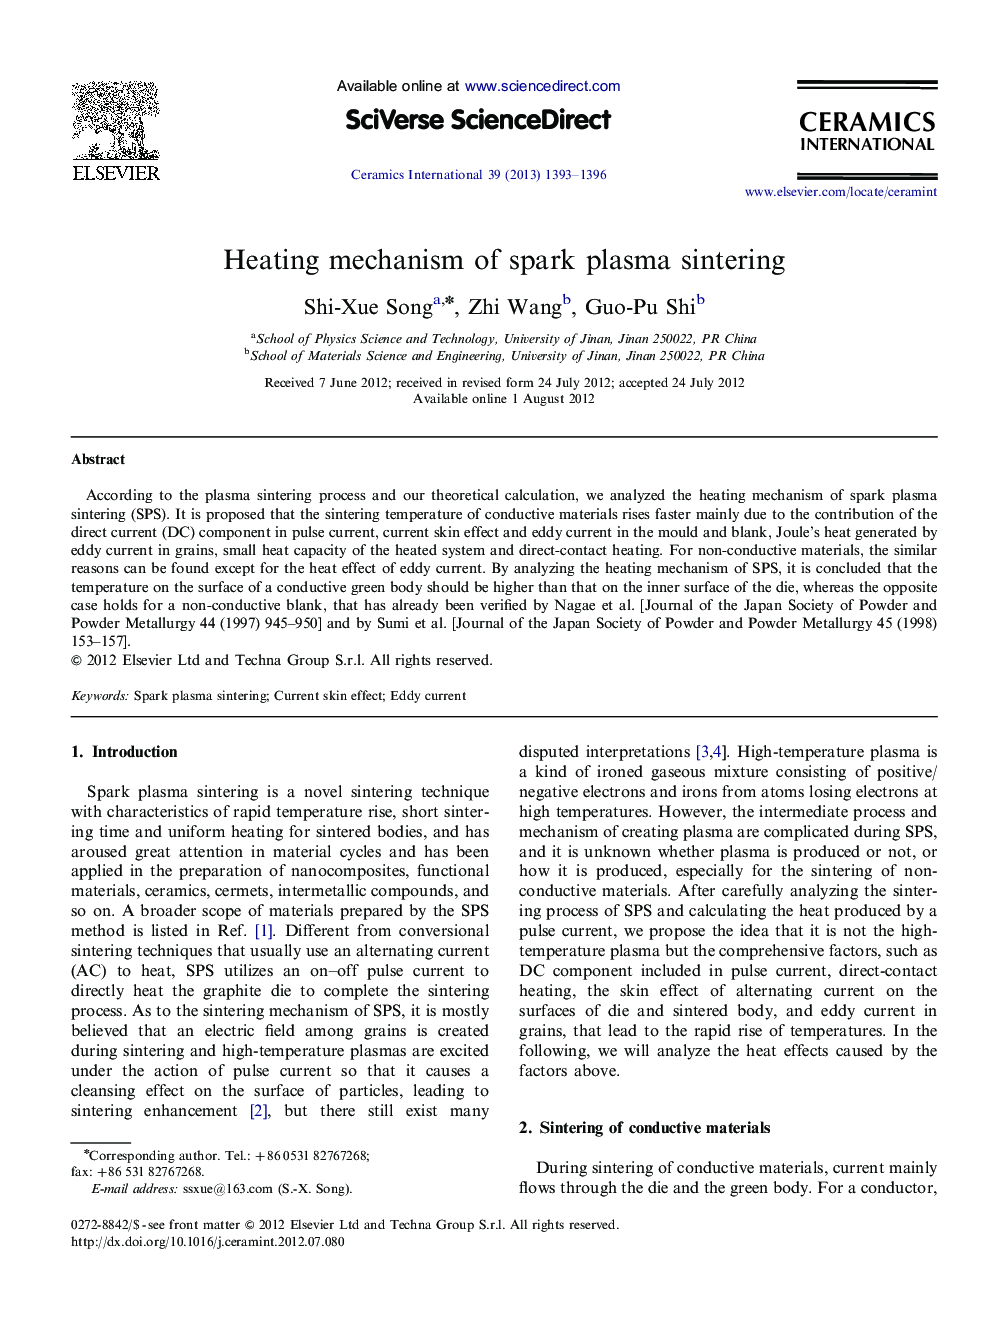 Heating mechanism of spark plasma sintering